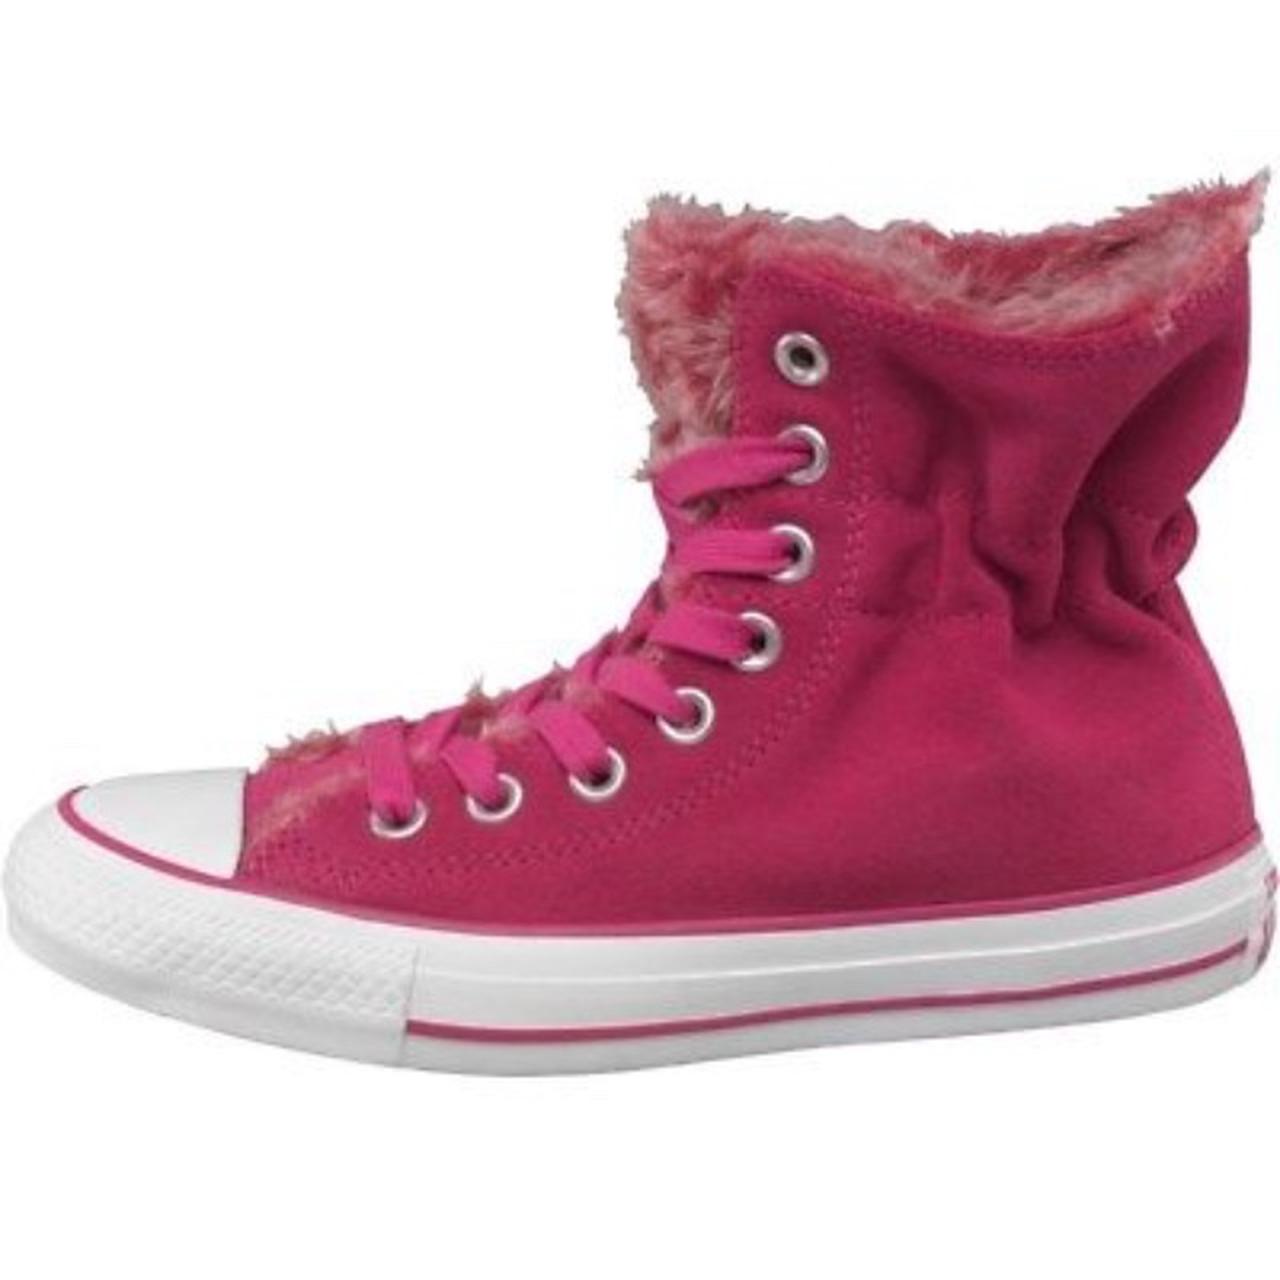 Storm Pink converse unt1tl3d Hi ( GS) Size 5/ women - Depop